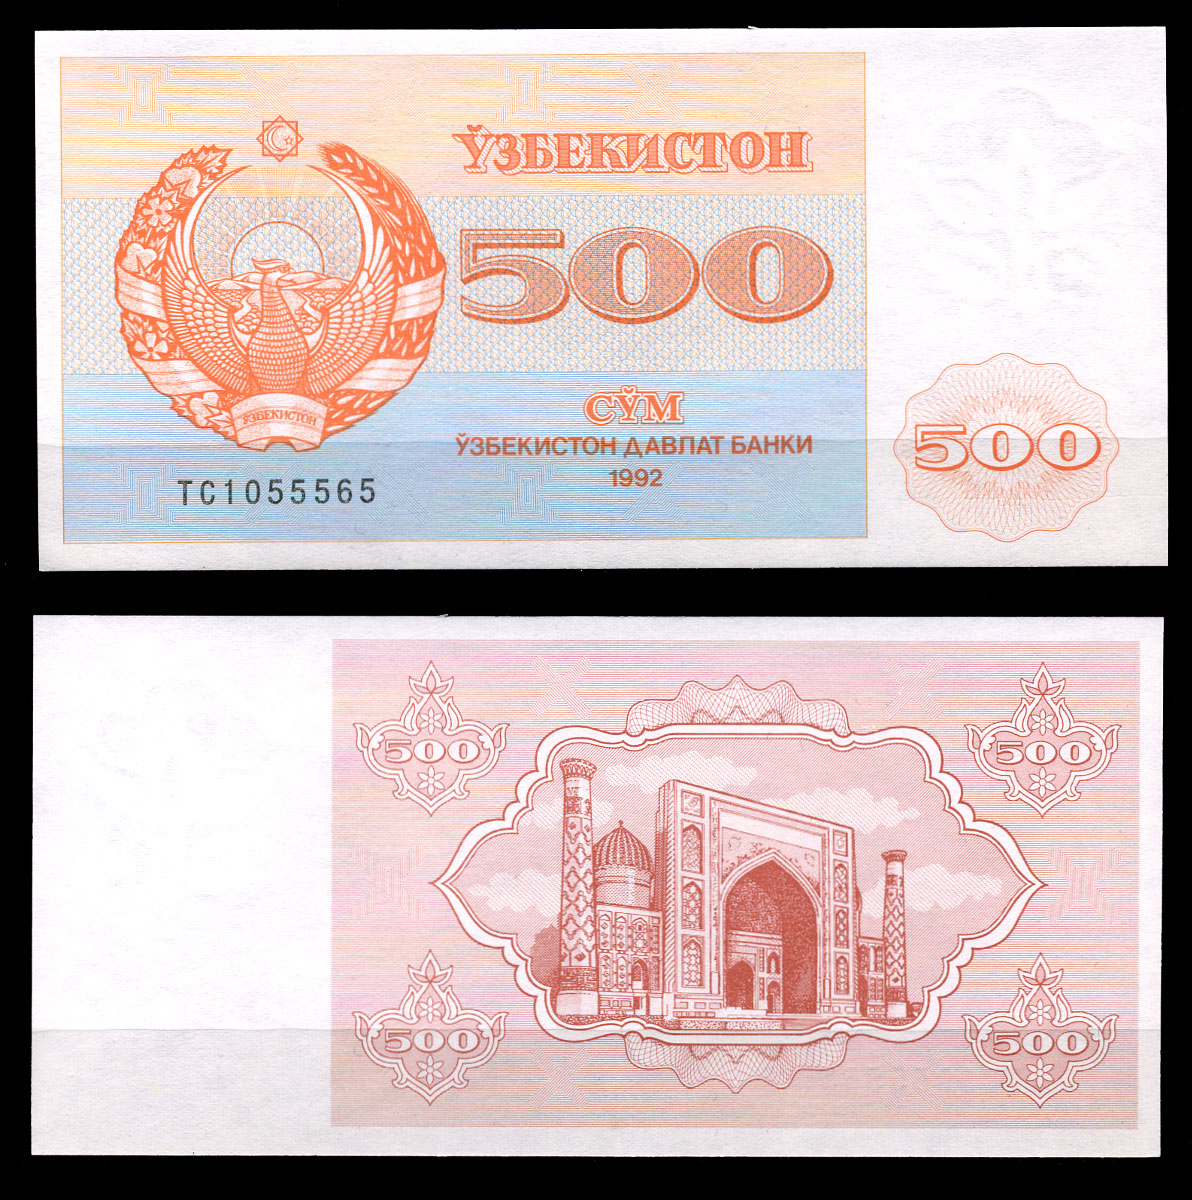 20000 узбекских. Узбекский сум. Сом валюта Узбекистана. Купюра 100 сум Узбекистан. Som валюта Узбекистана.